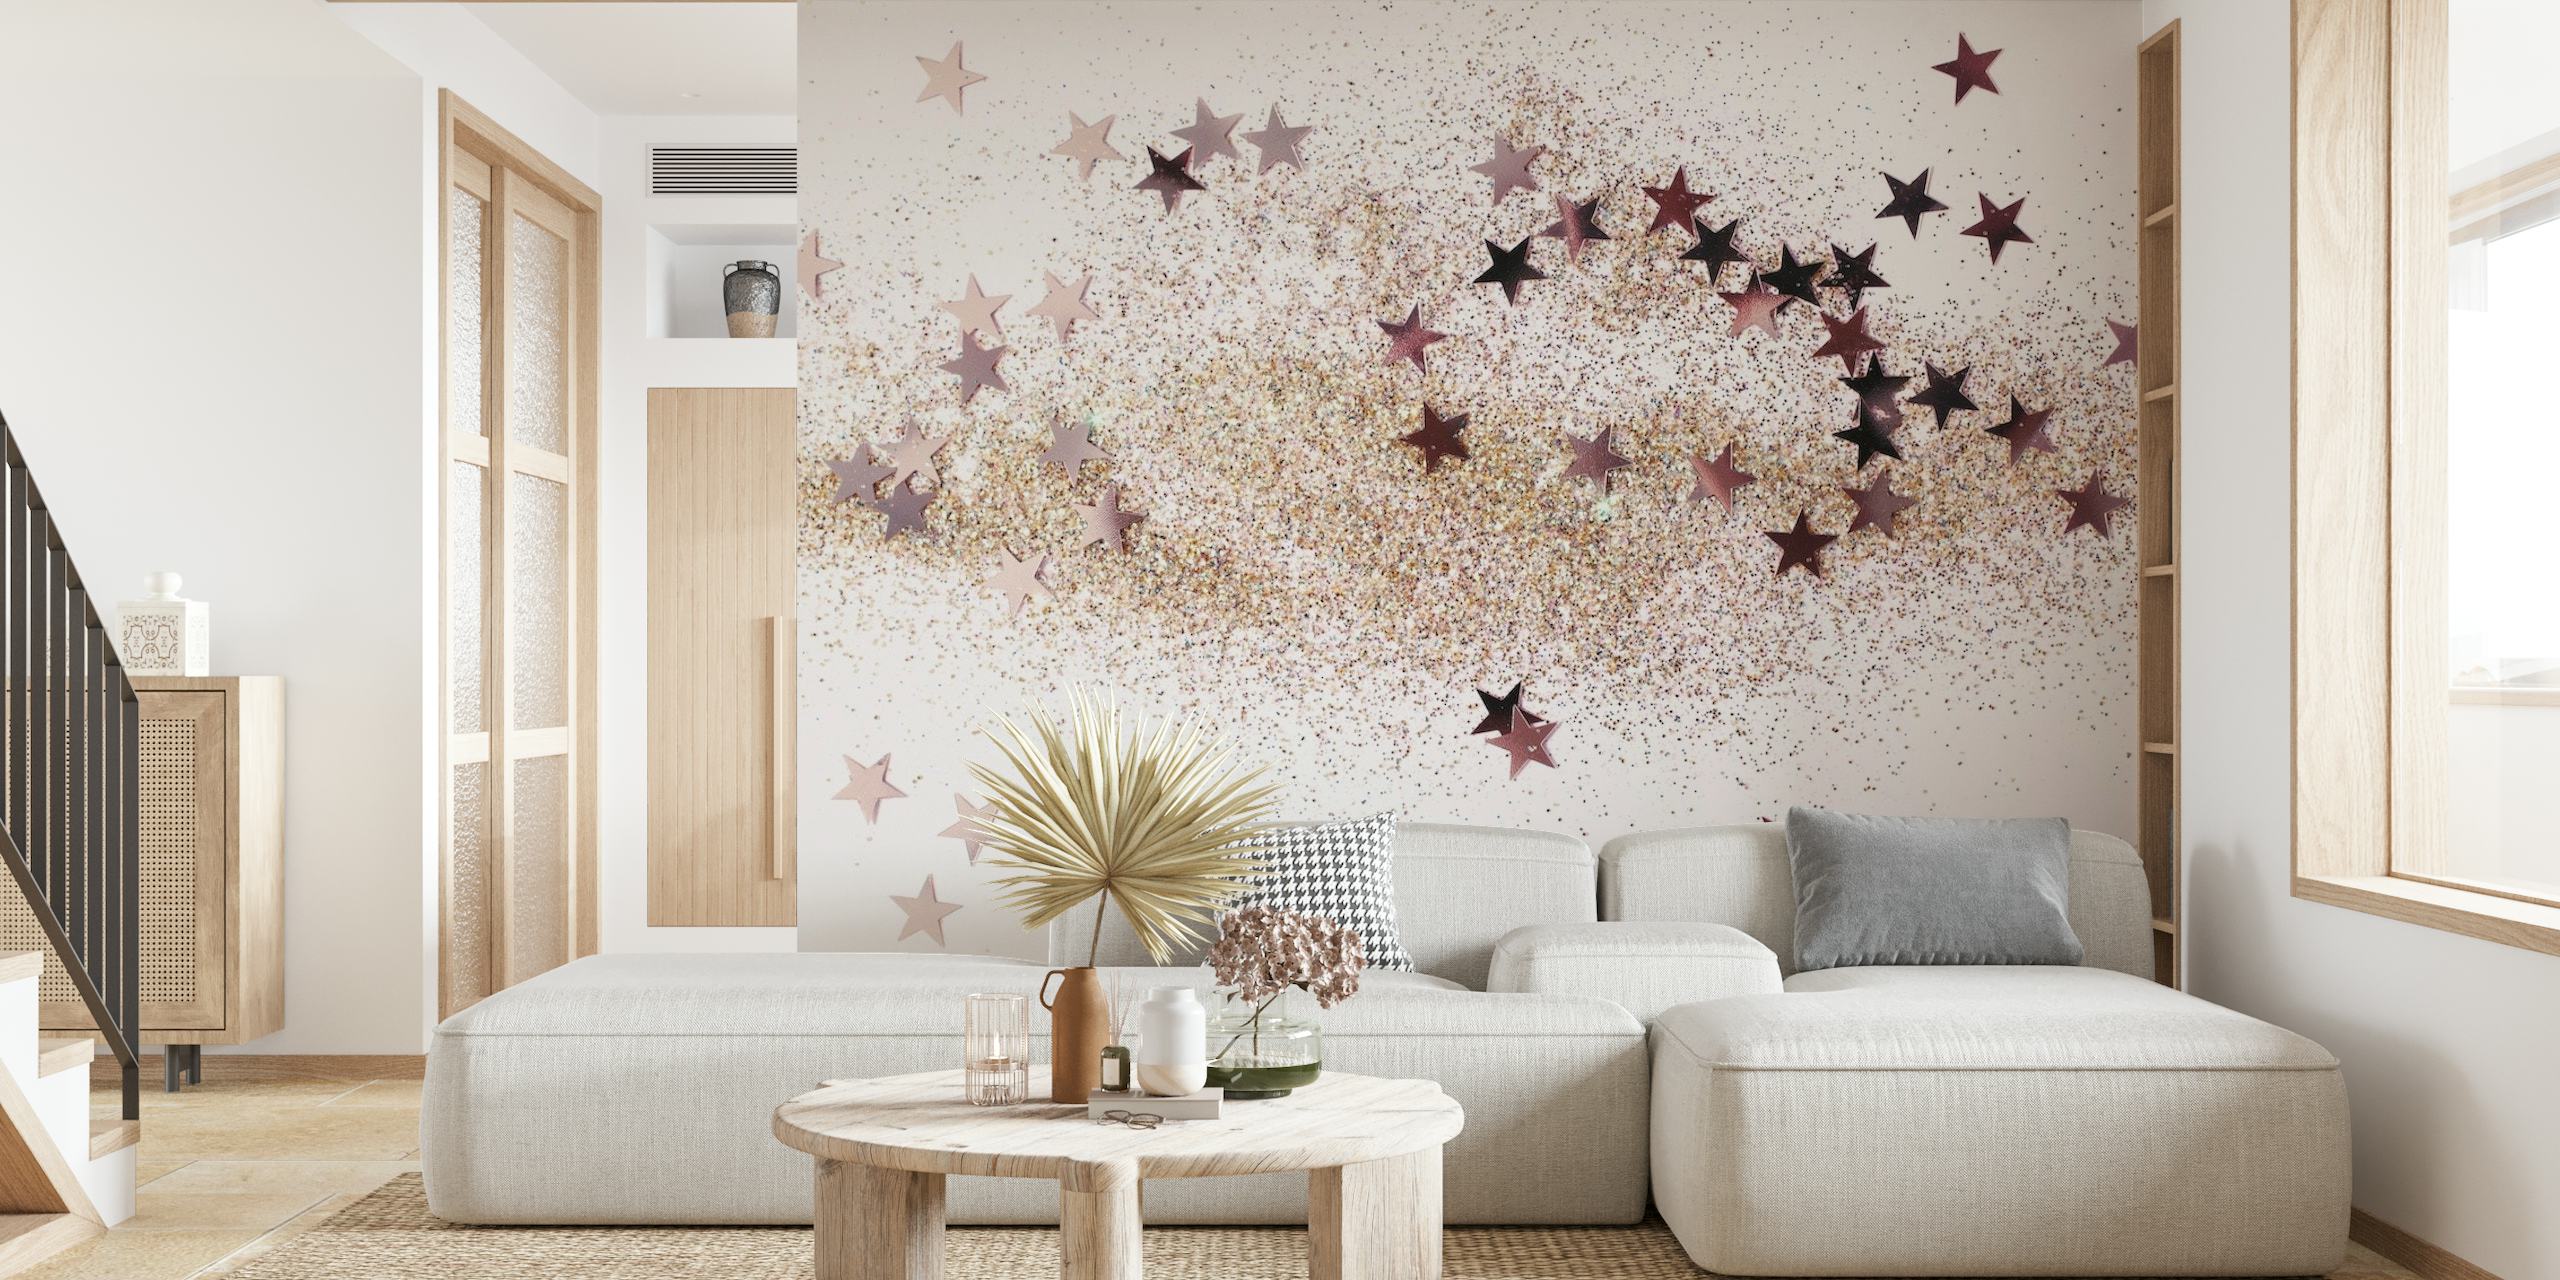 SKY FULL OF STARS - GLITTER wallpaper